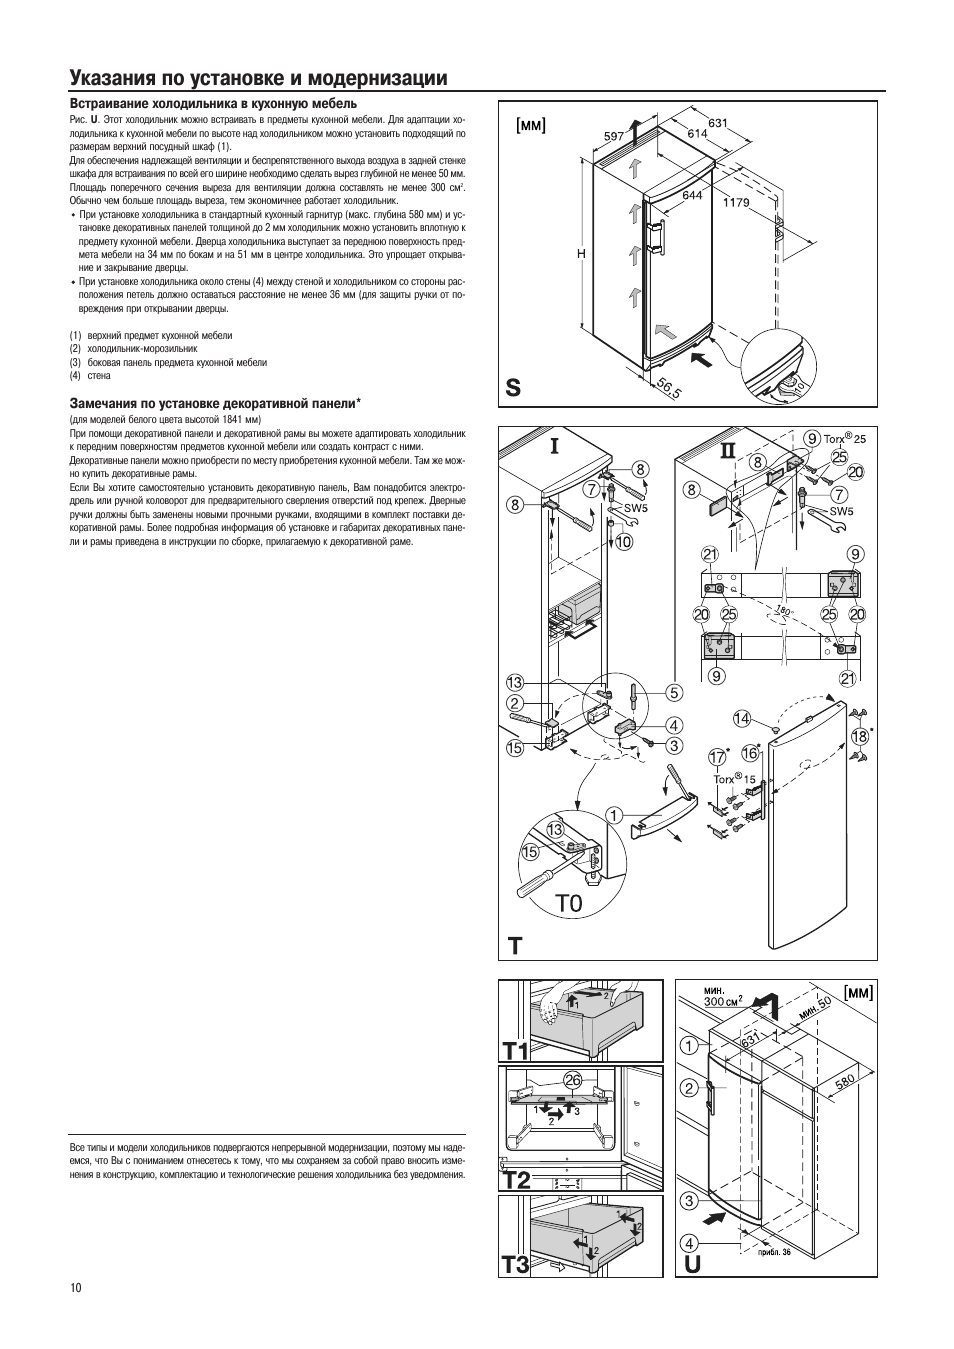 Схема установки встроенного холодильника Либхер